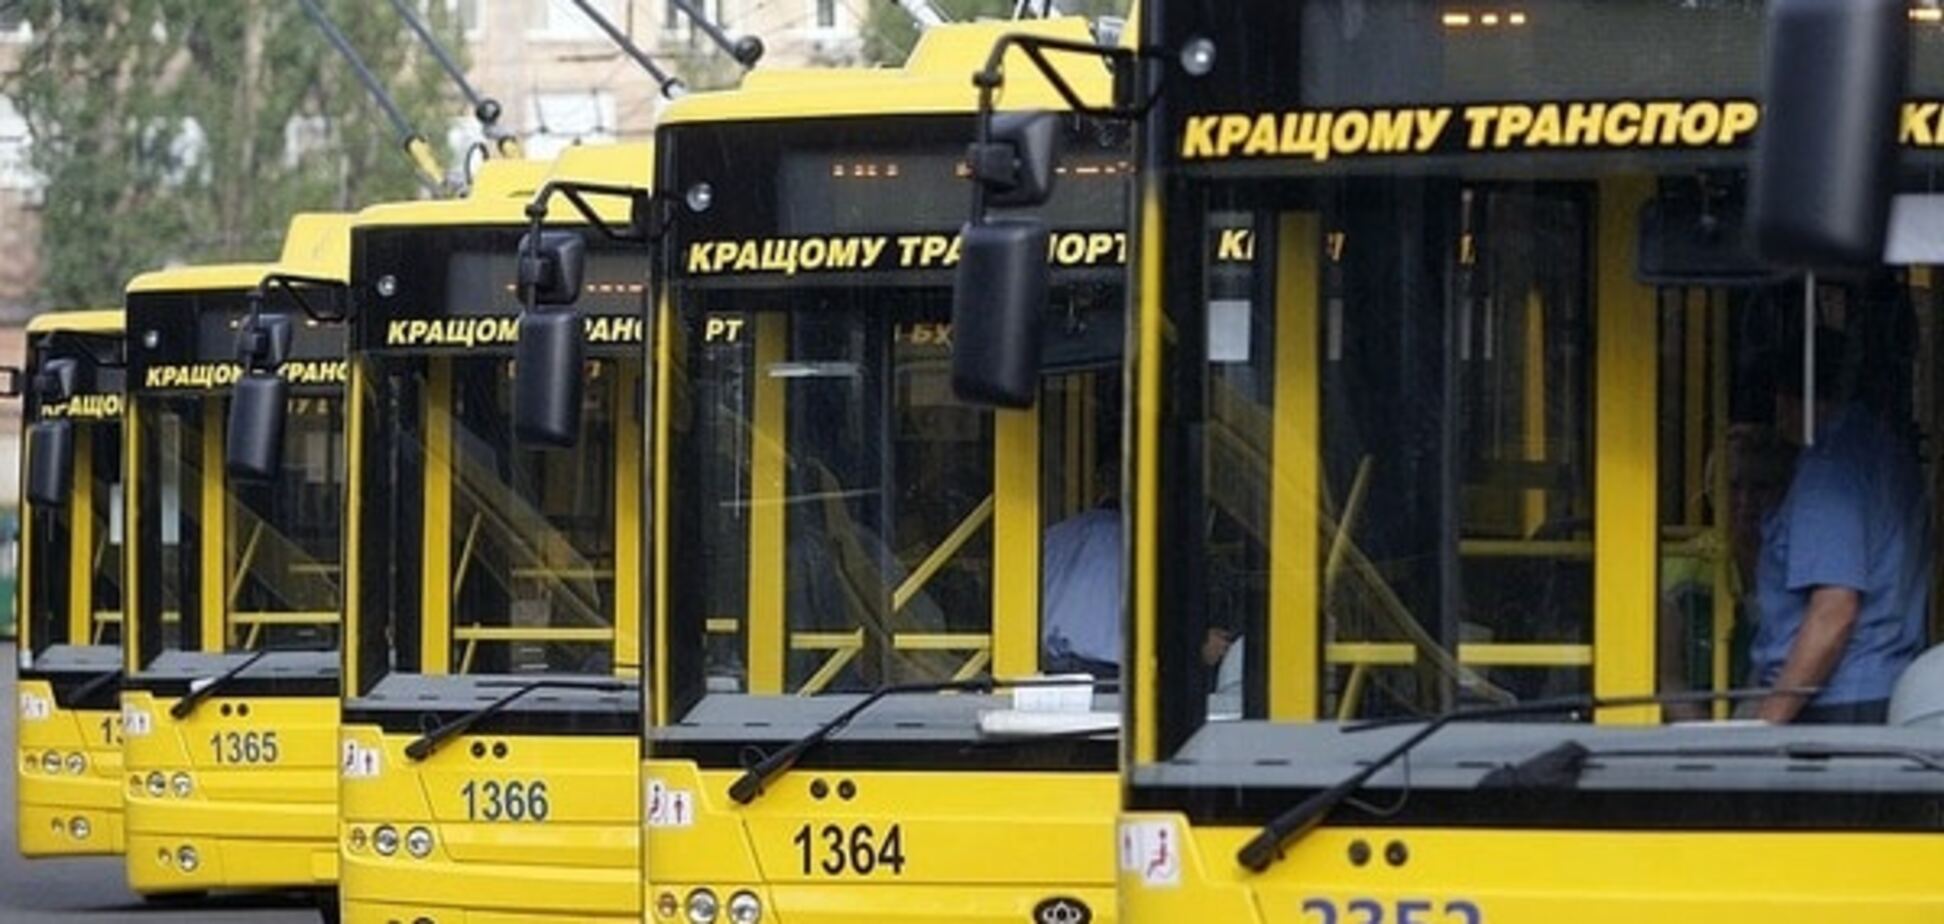 По-европейски: Киев в 2015 году полностью обновил троллейбусы